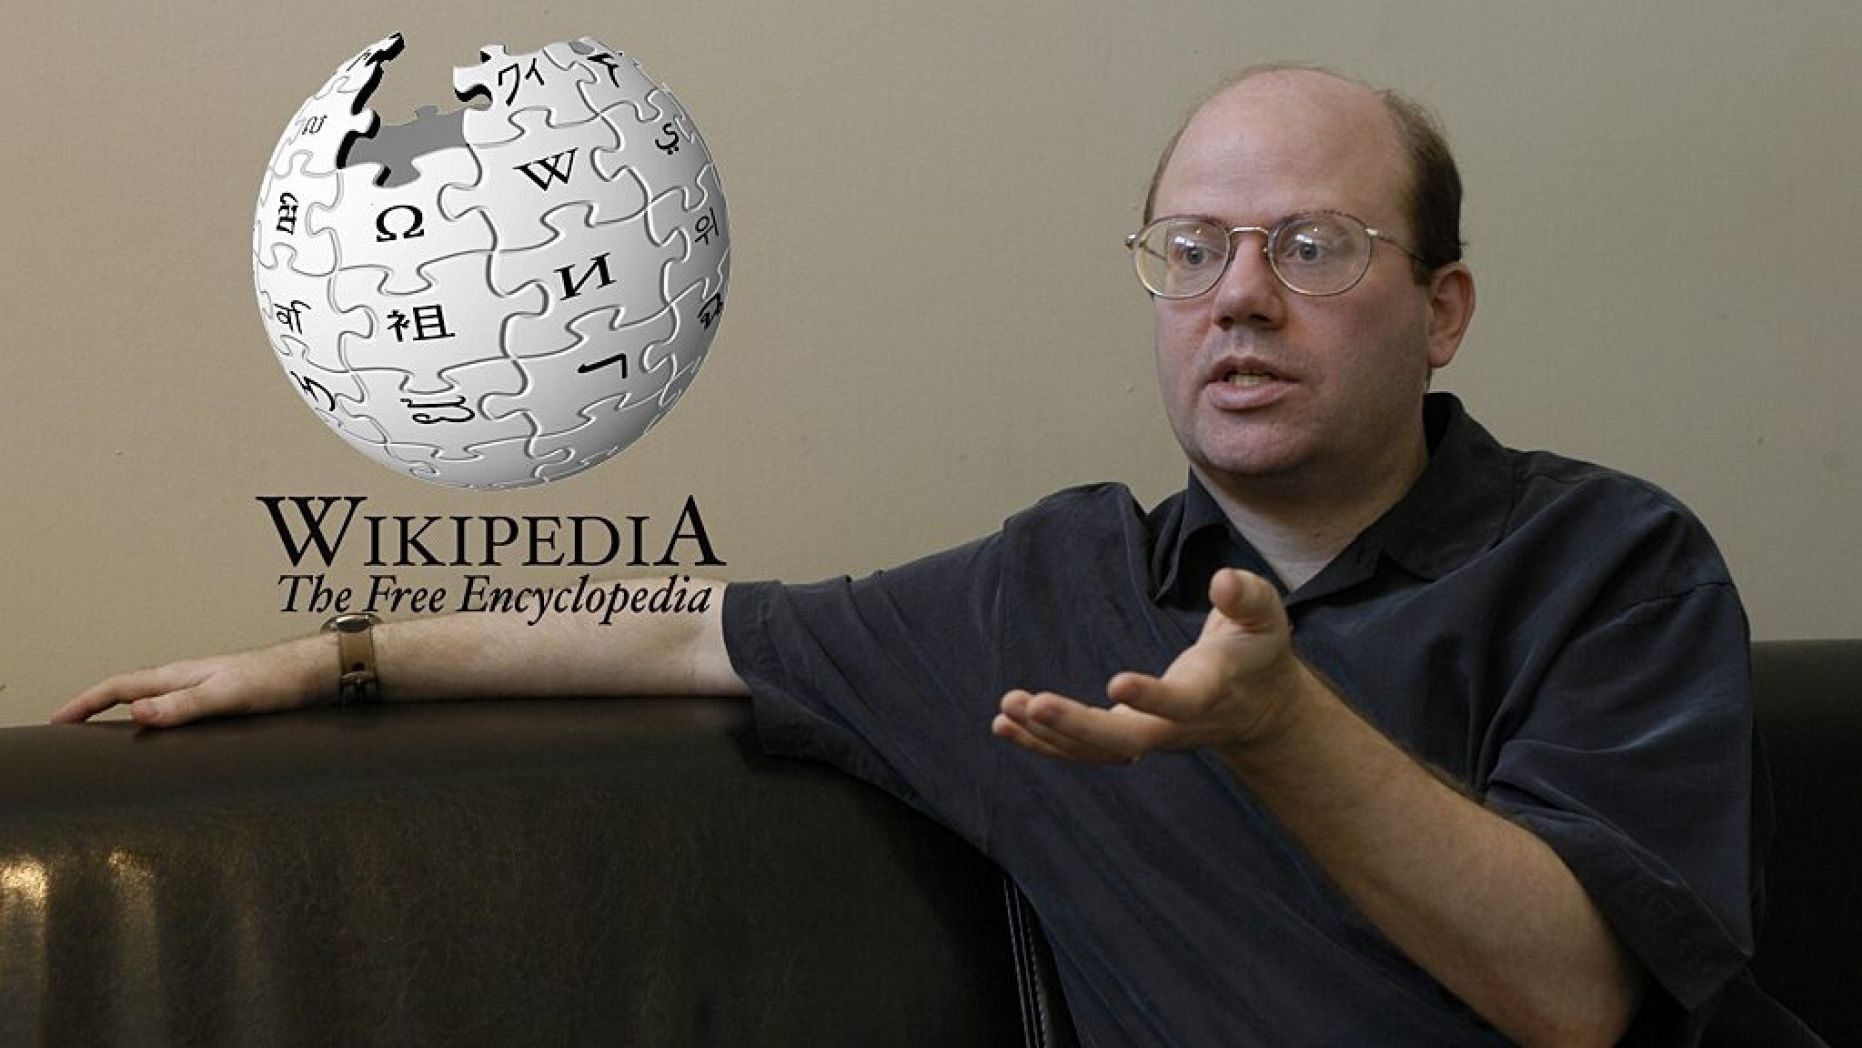 Wikipedia co-founder Larry Sanger